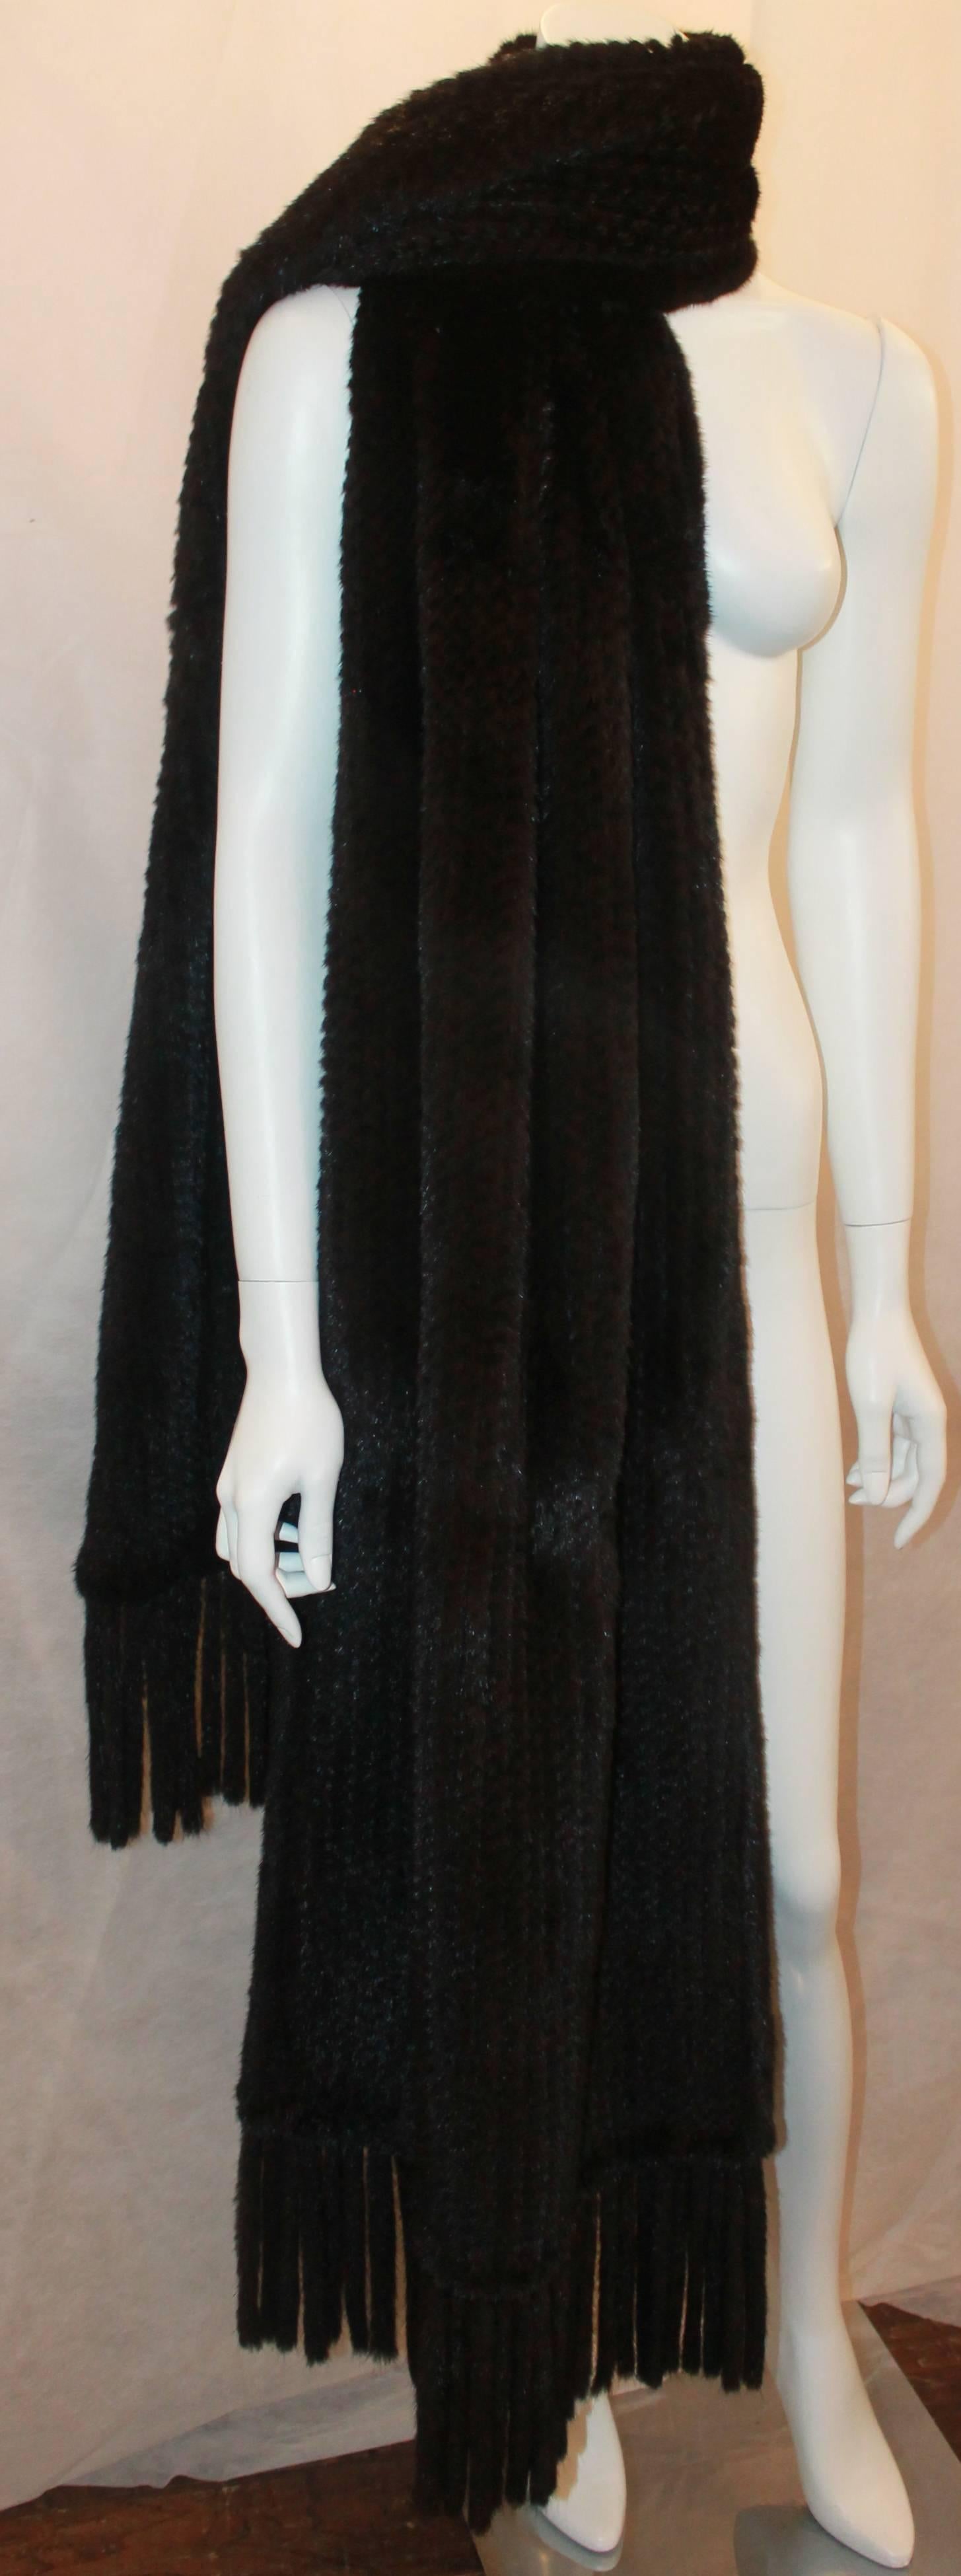 Women's Dennis Basso Black Knitted Mink Stole w/ Tassels